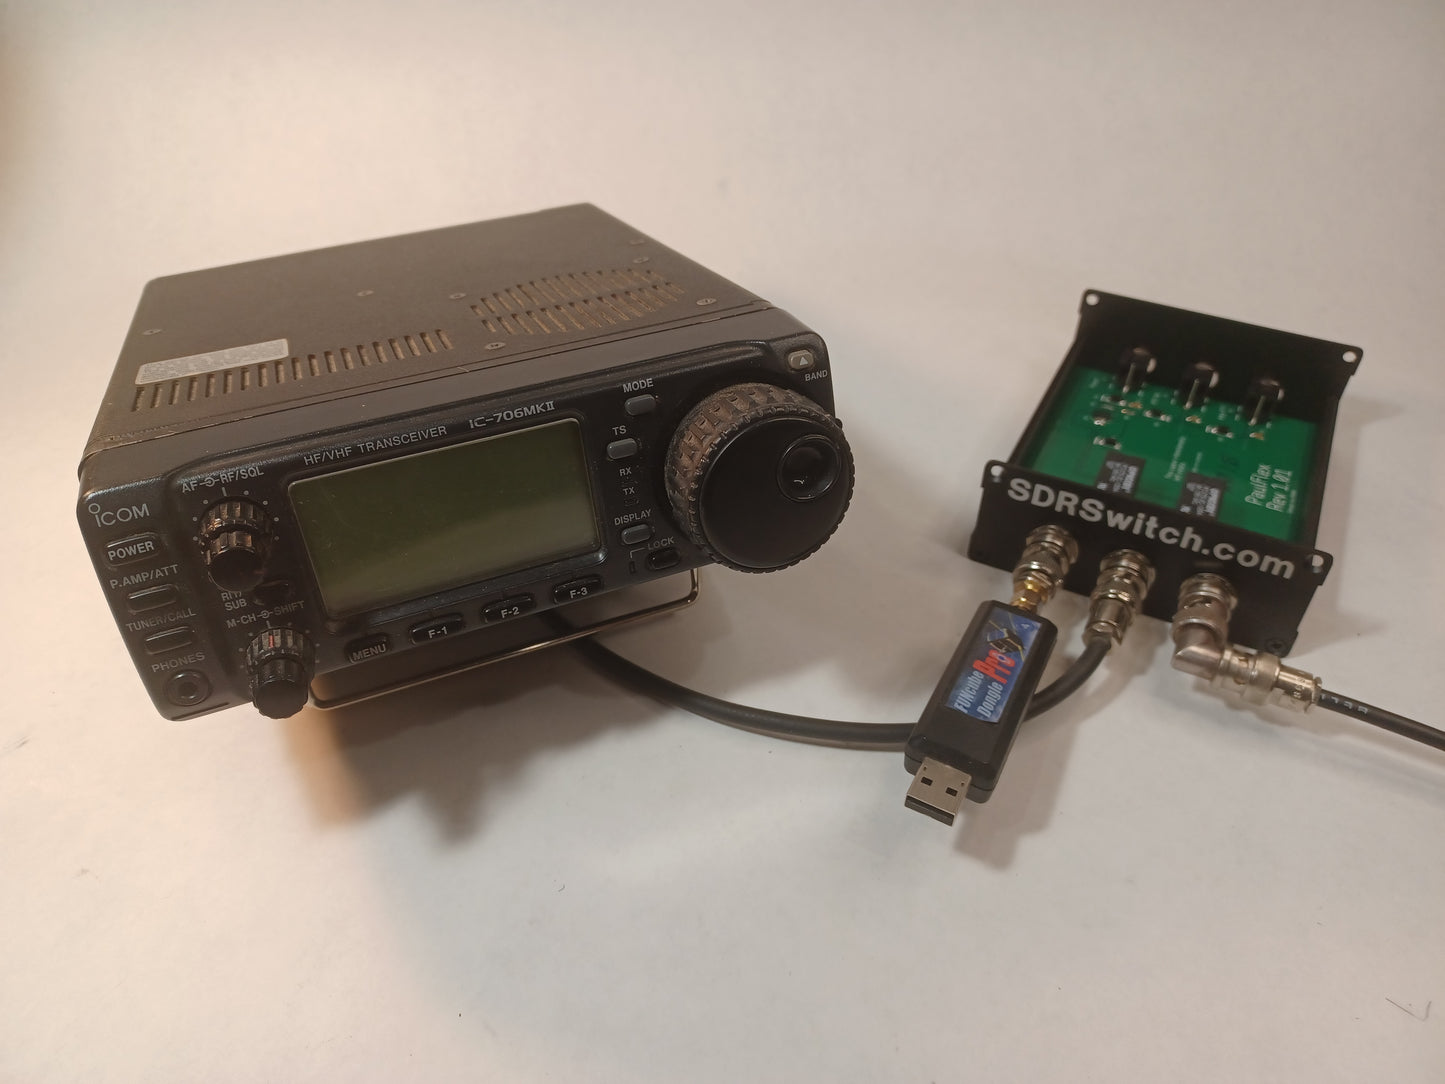 SDR Switch 0-70 MHz 100W